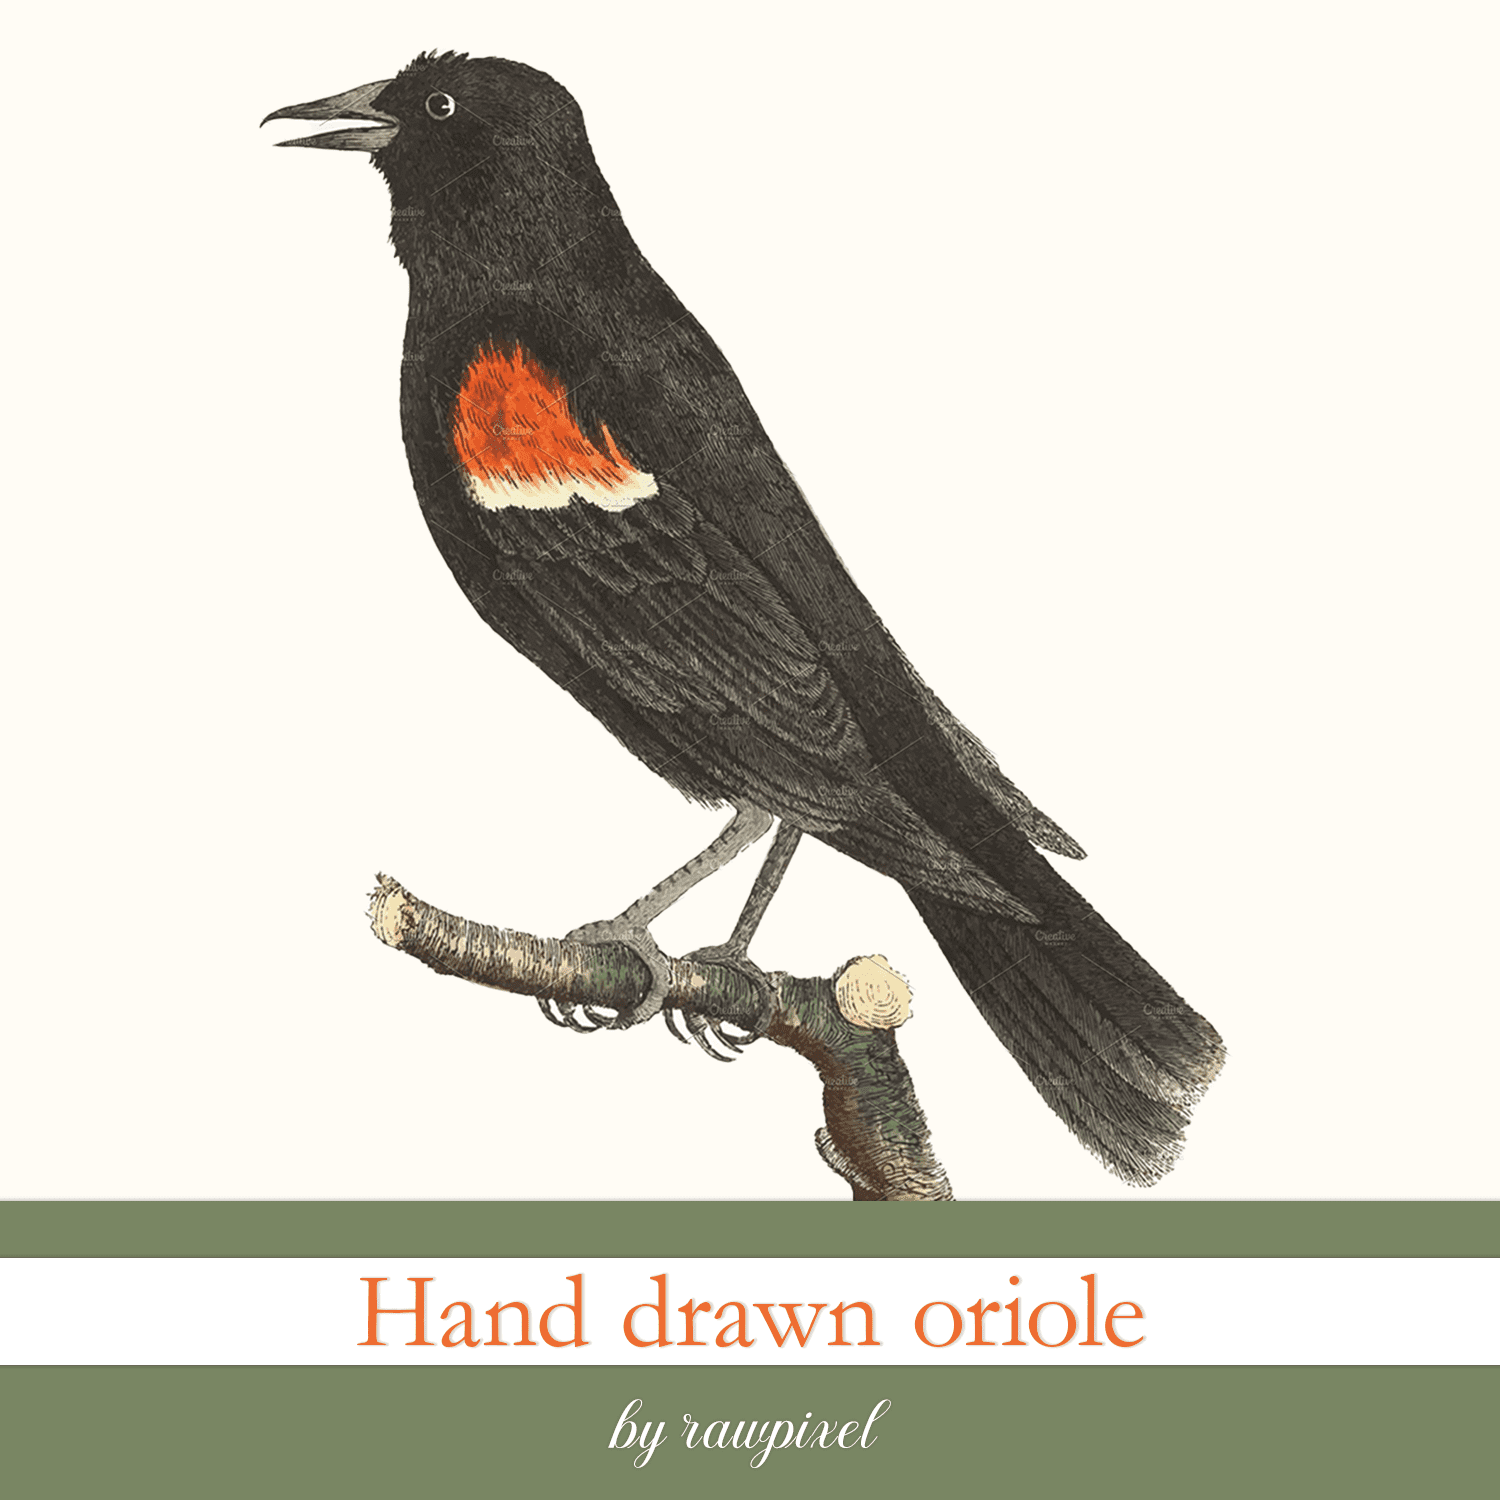 Hand drawn oriole.